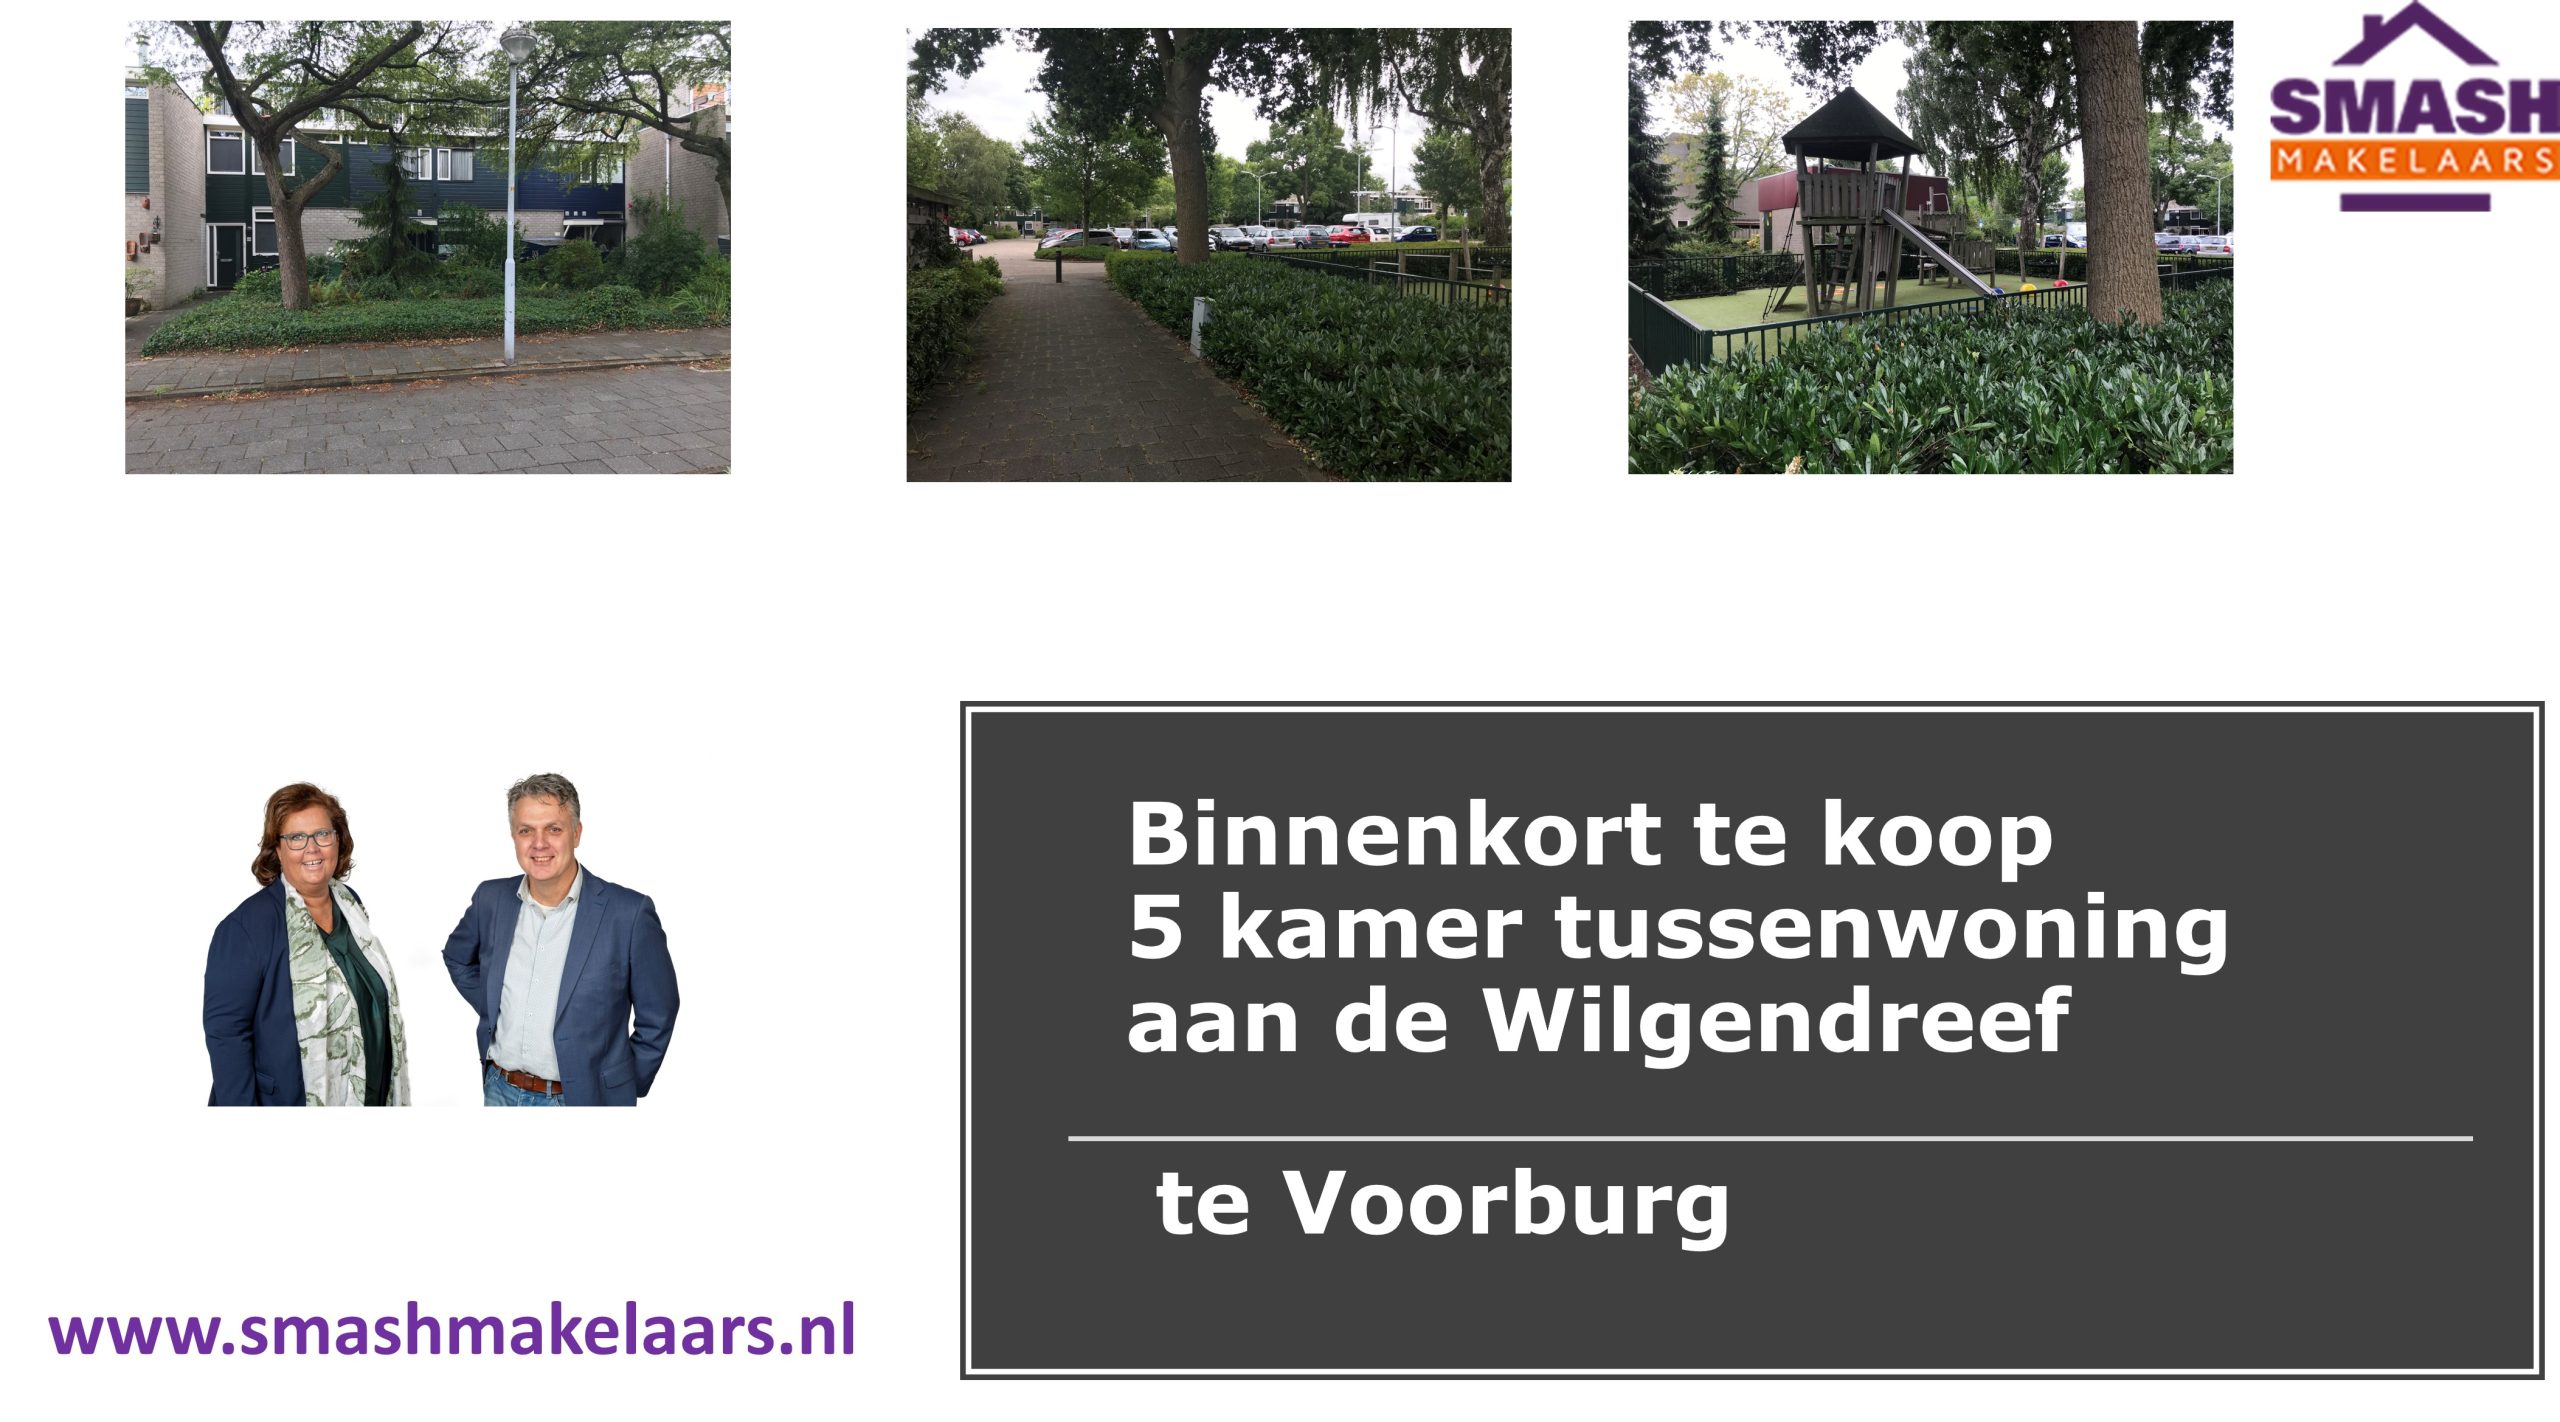 Kluswoning aan de Wilgendreef te Voorburg Binnenkort te koop